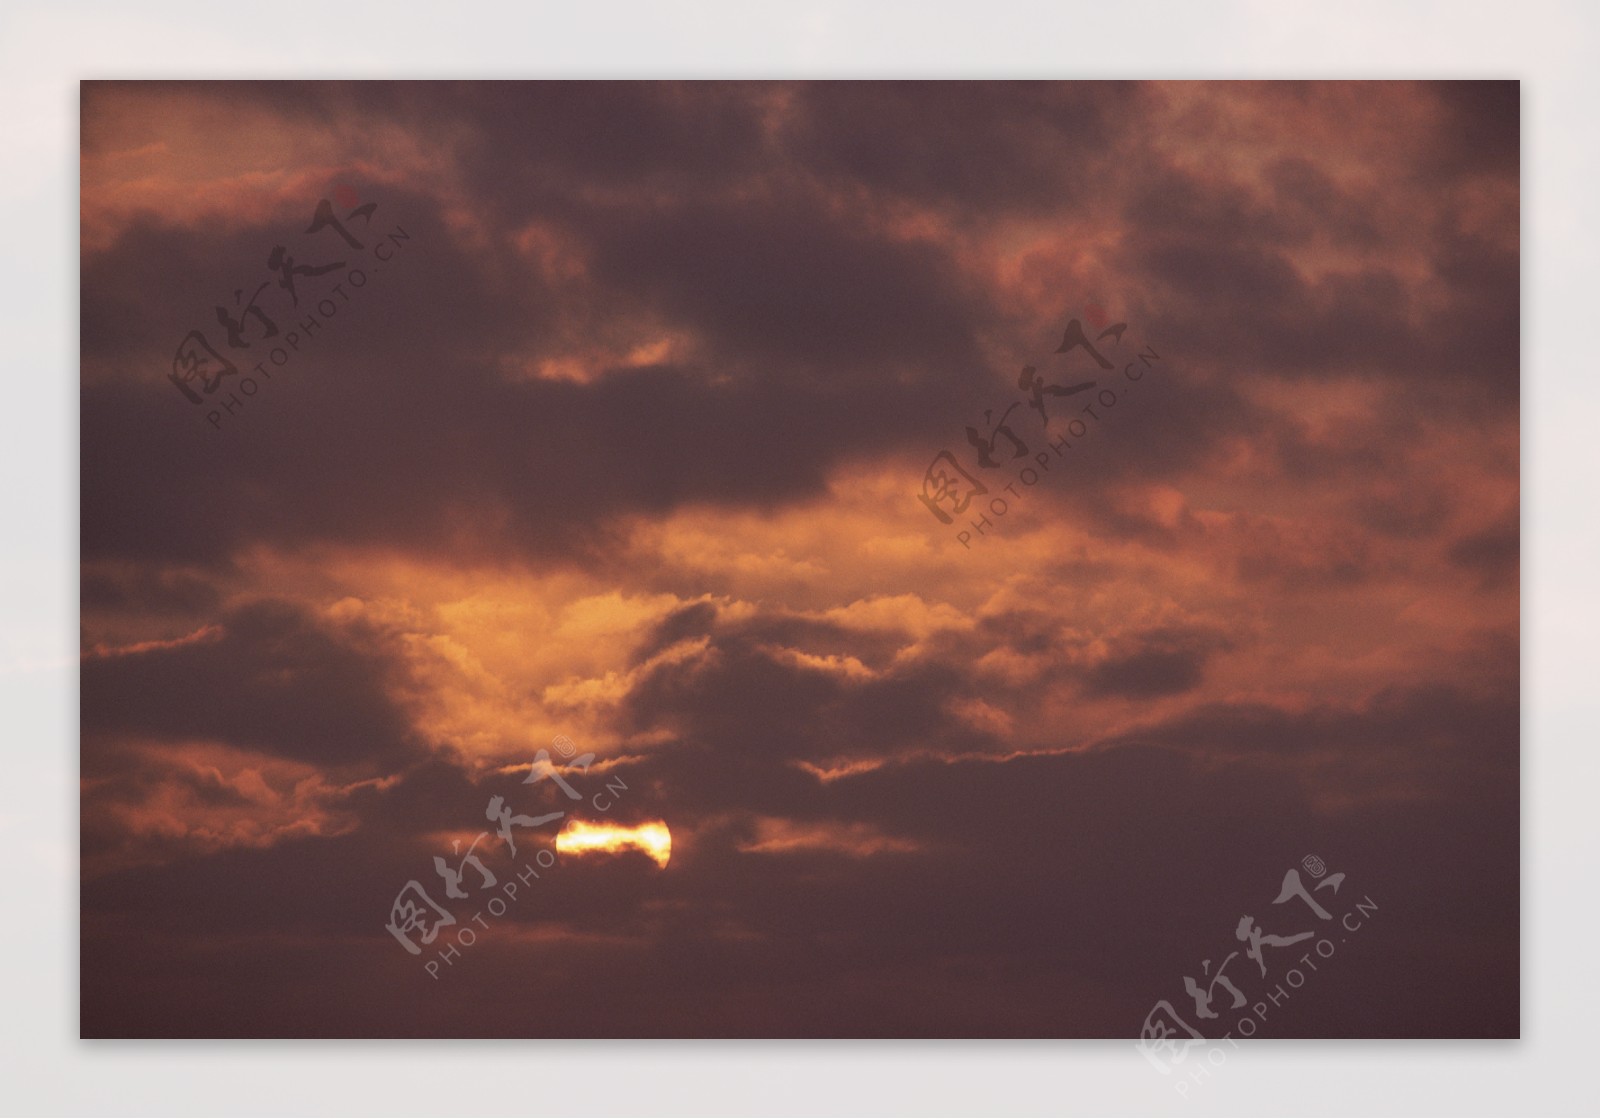 云层里的夕阳图片